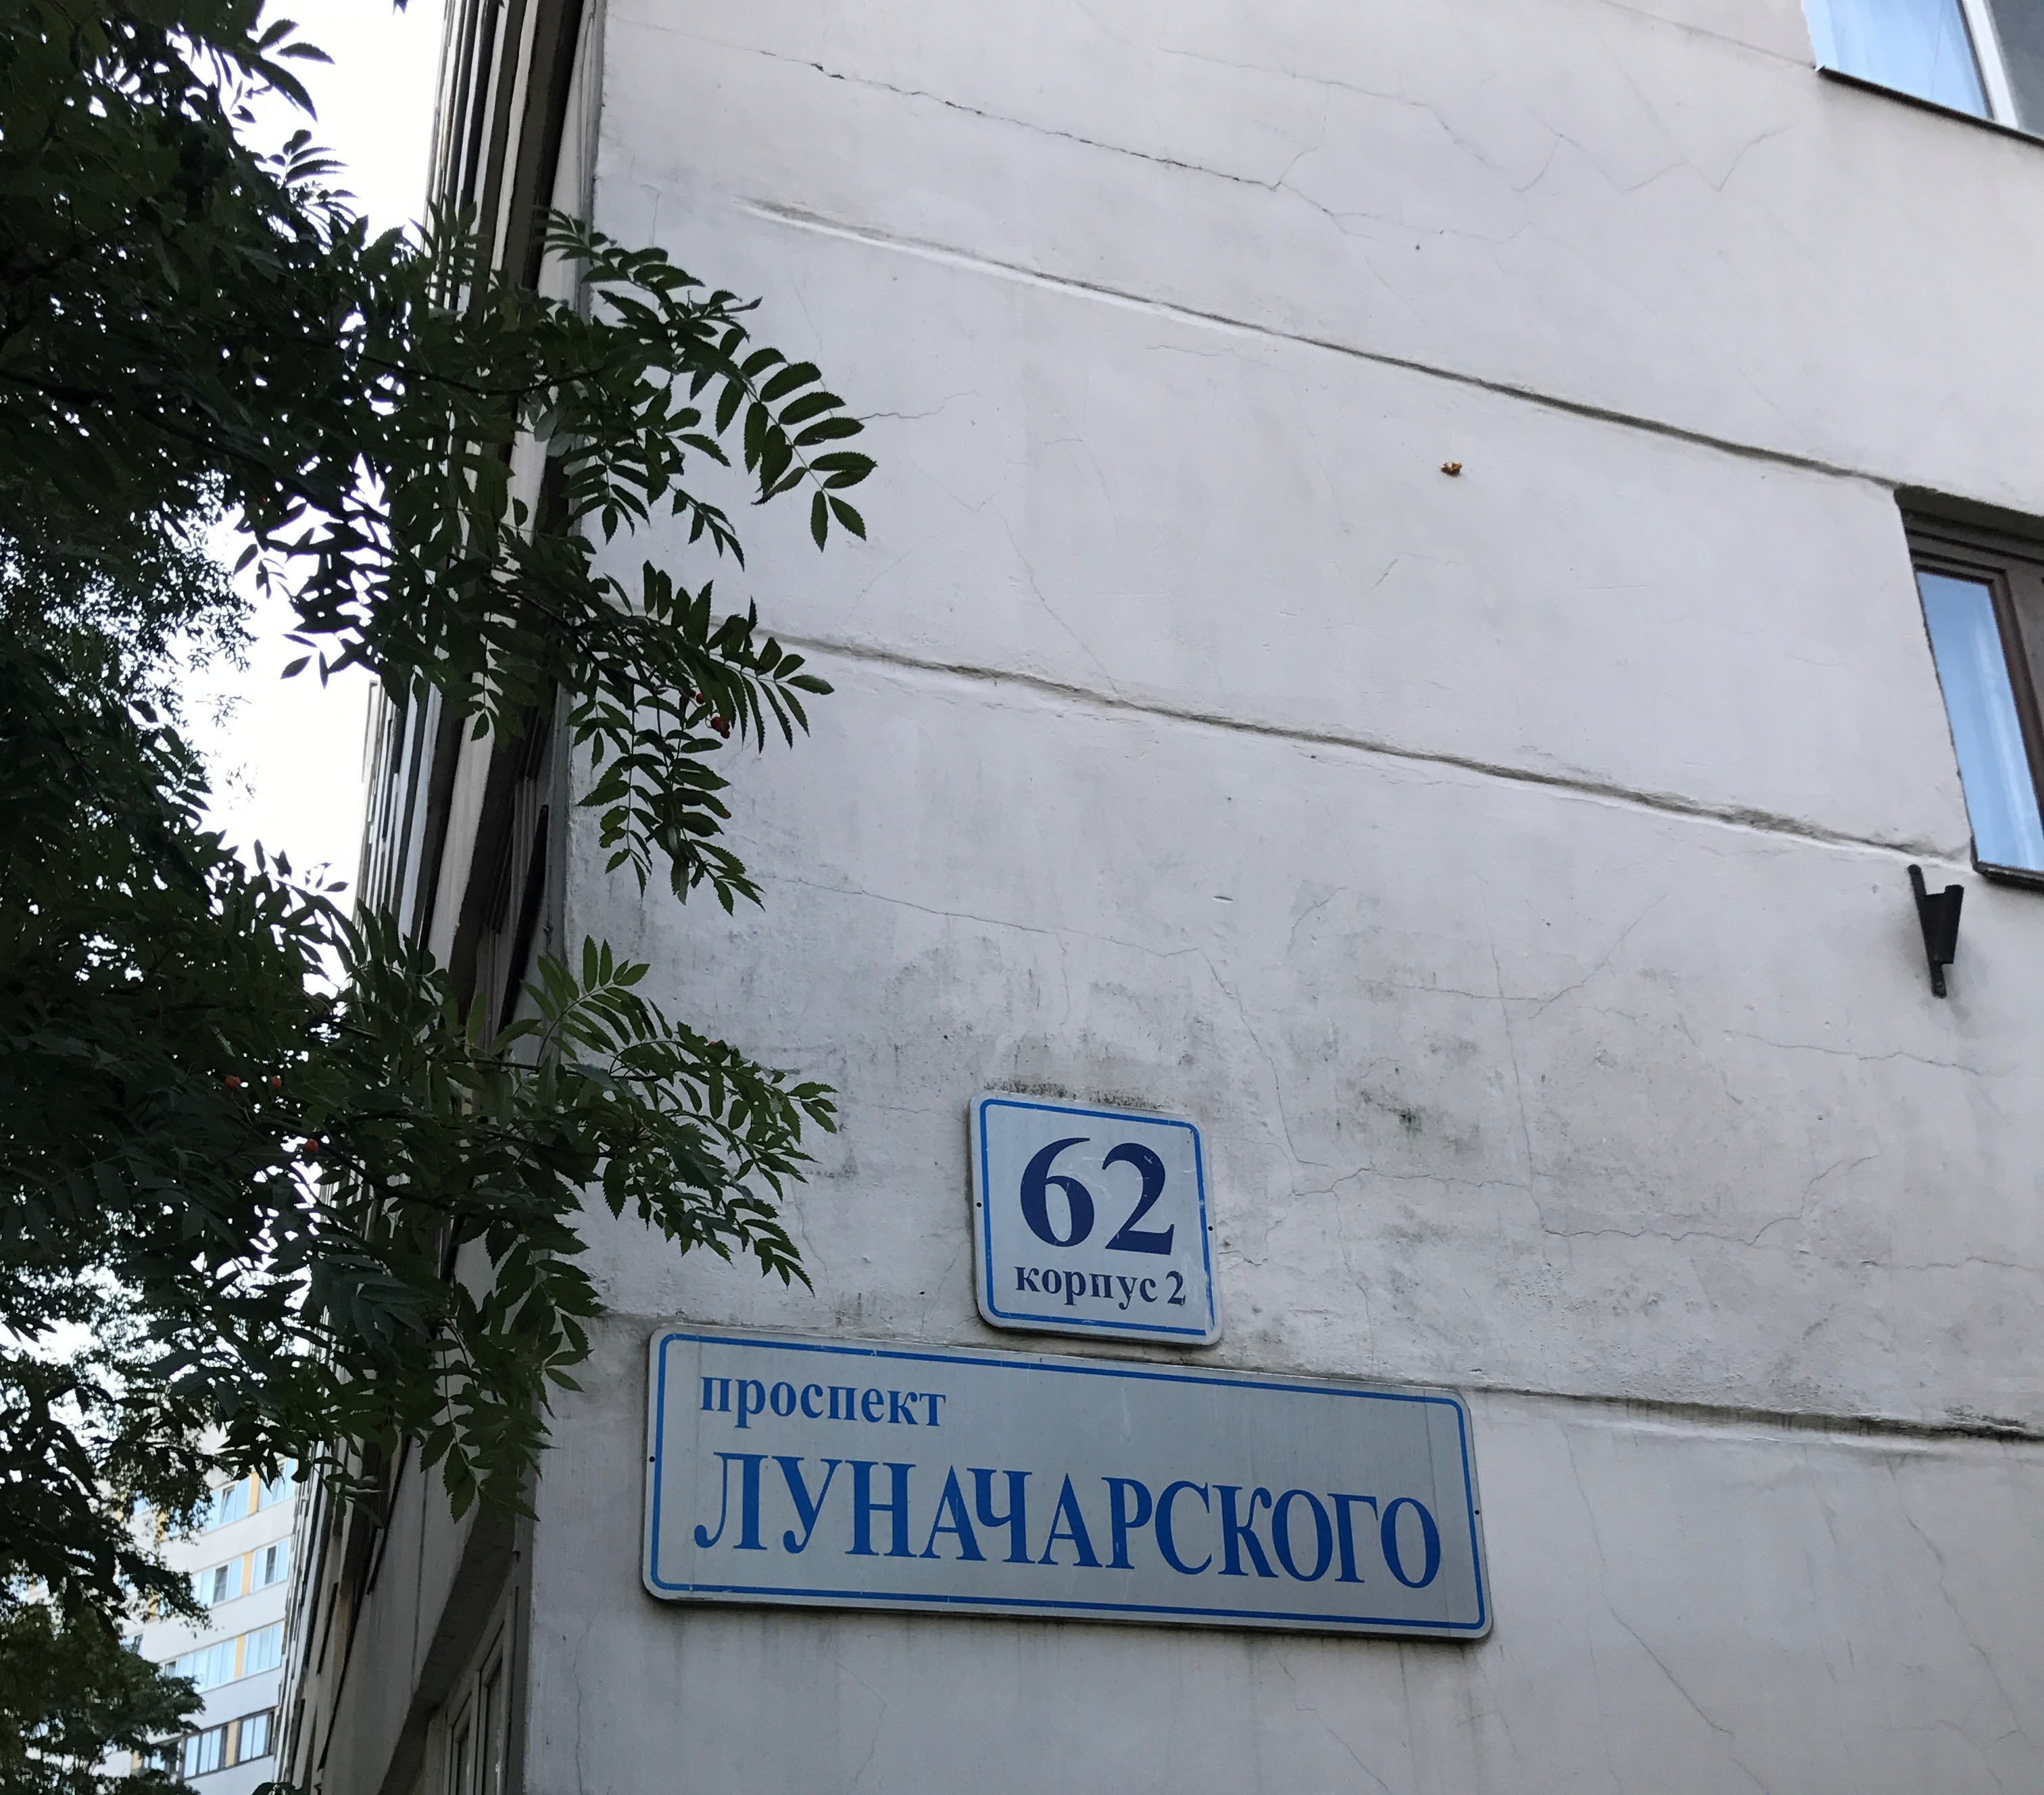 Косметический ремонт лестничных клеток пр. Луначарского дом 62 к. 2  ( 1 пар.) (2)